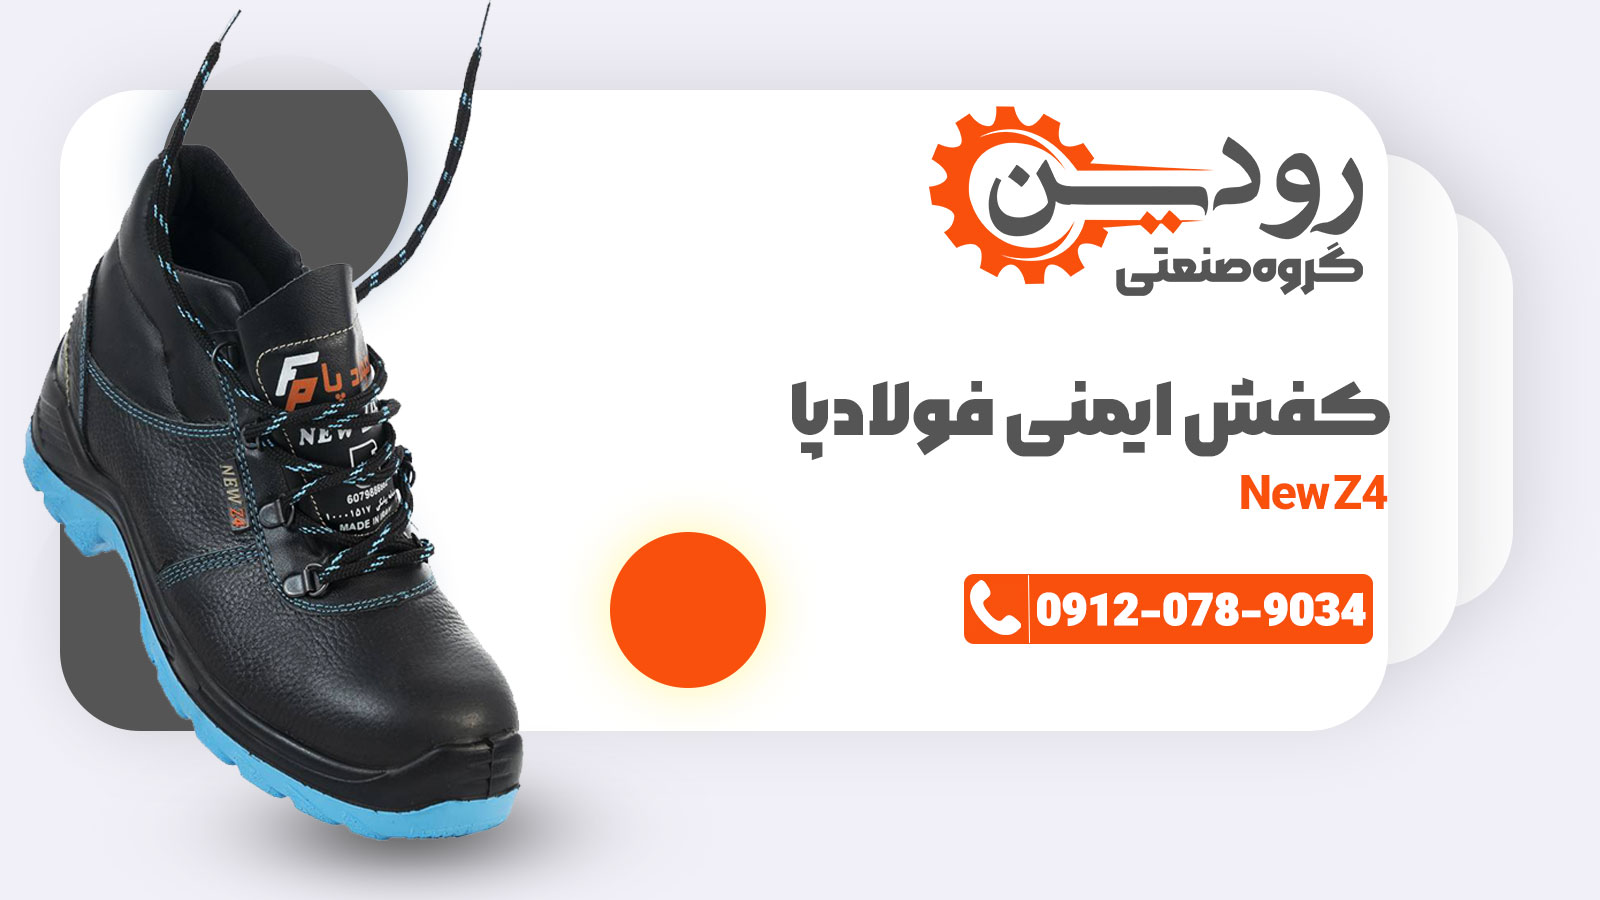 لیست قیمت خرید کفش ایمنی فولاد پا در سایت ما قابل درج است ولی فعلا به علت نوسانات قرار داده نشده.